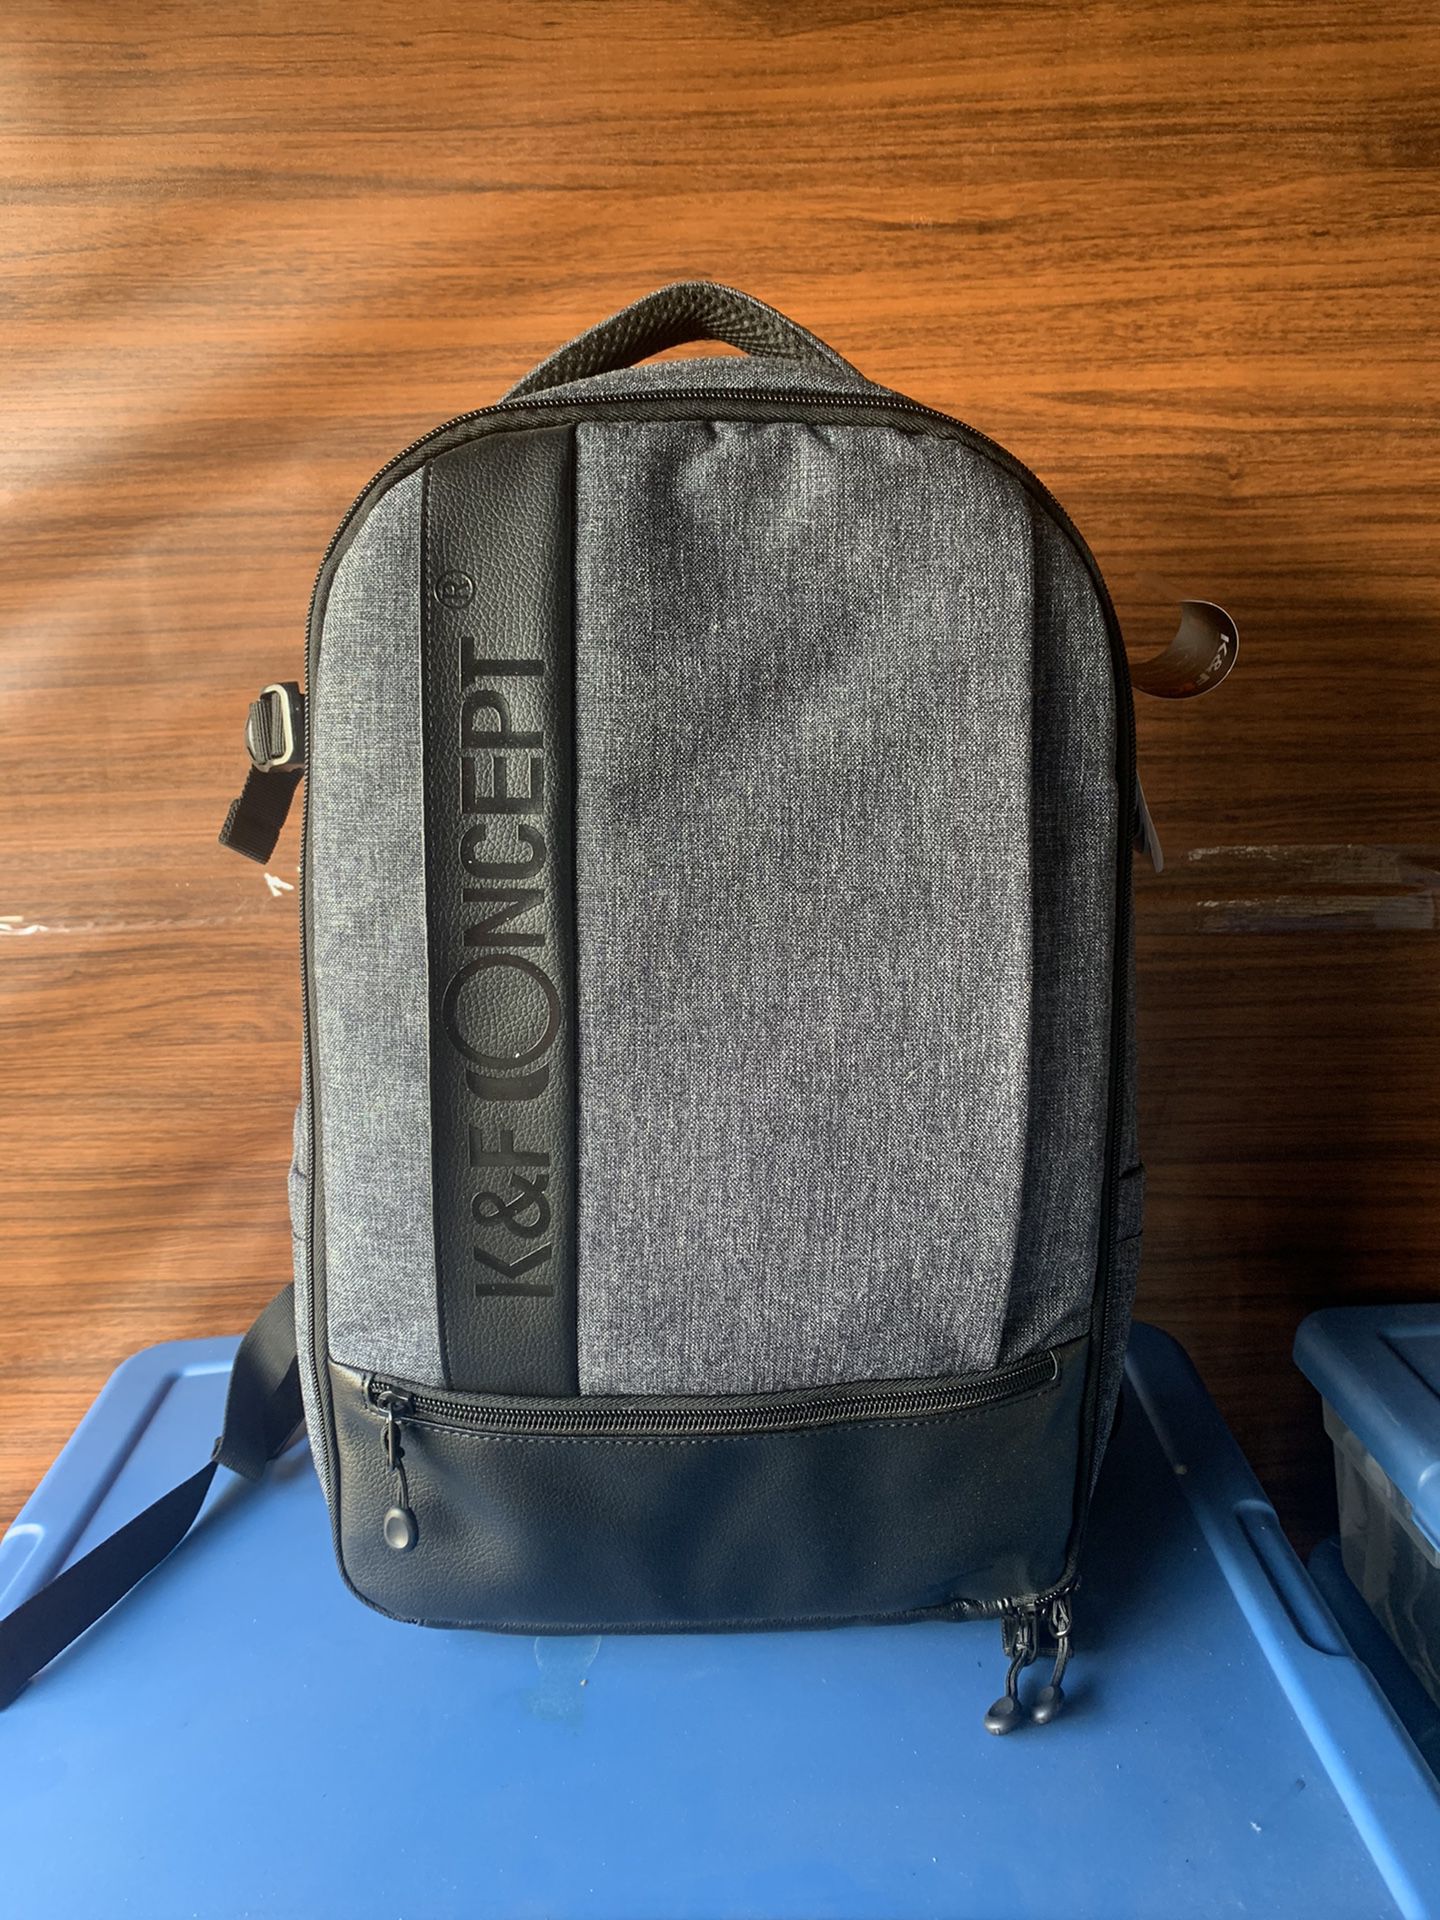 K&F Concept Camera Backpack